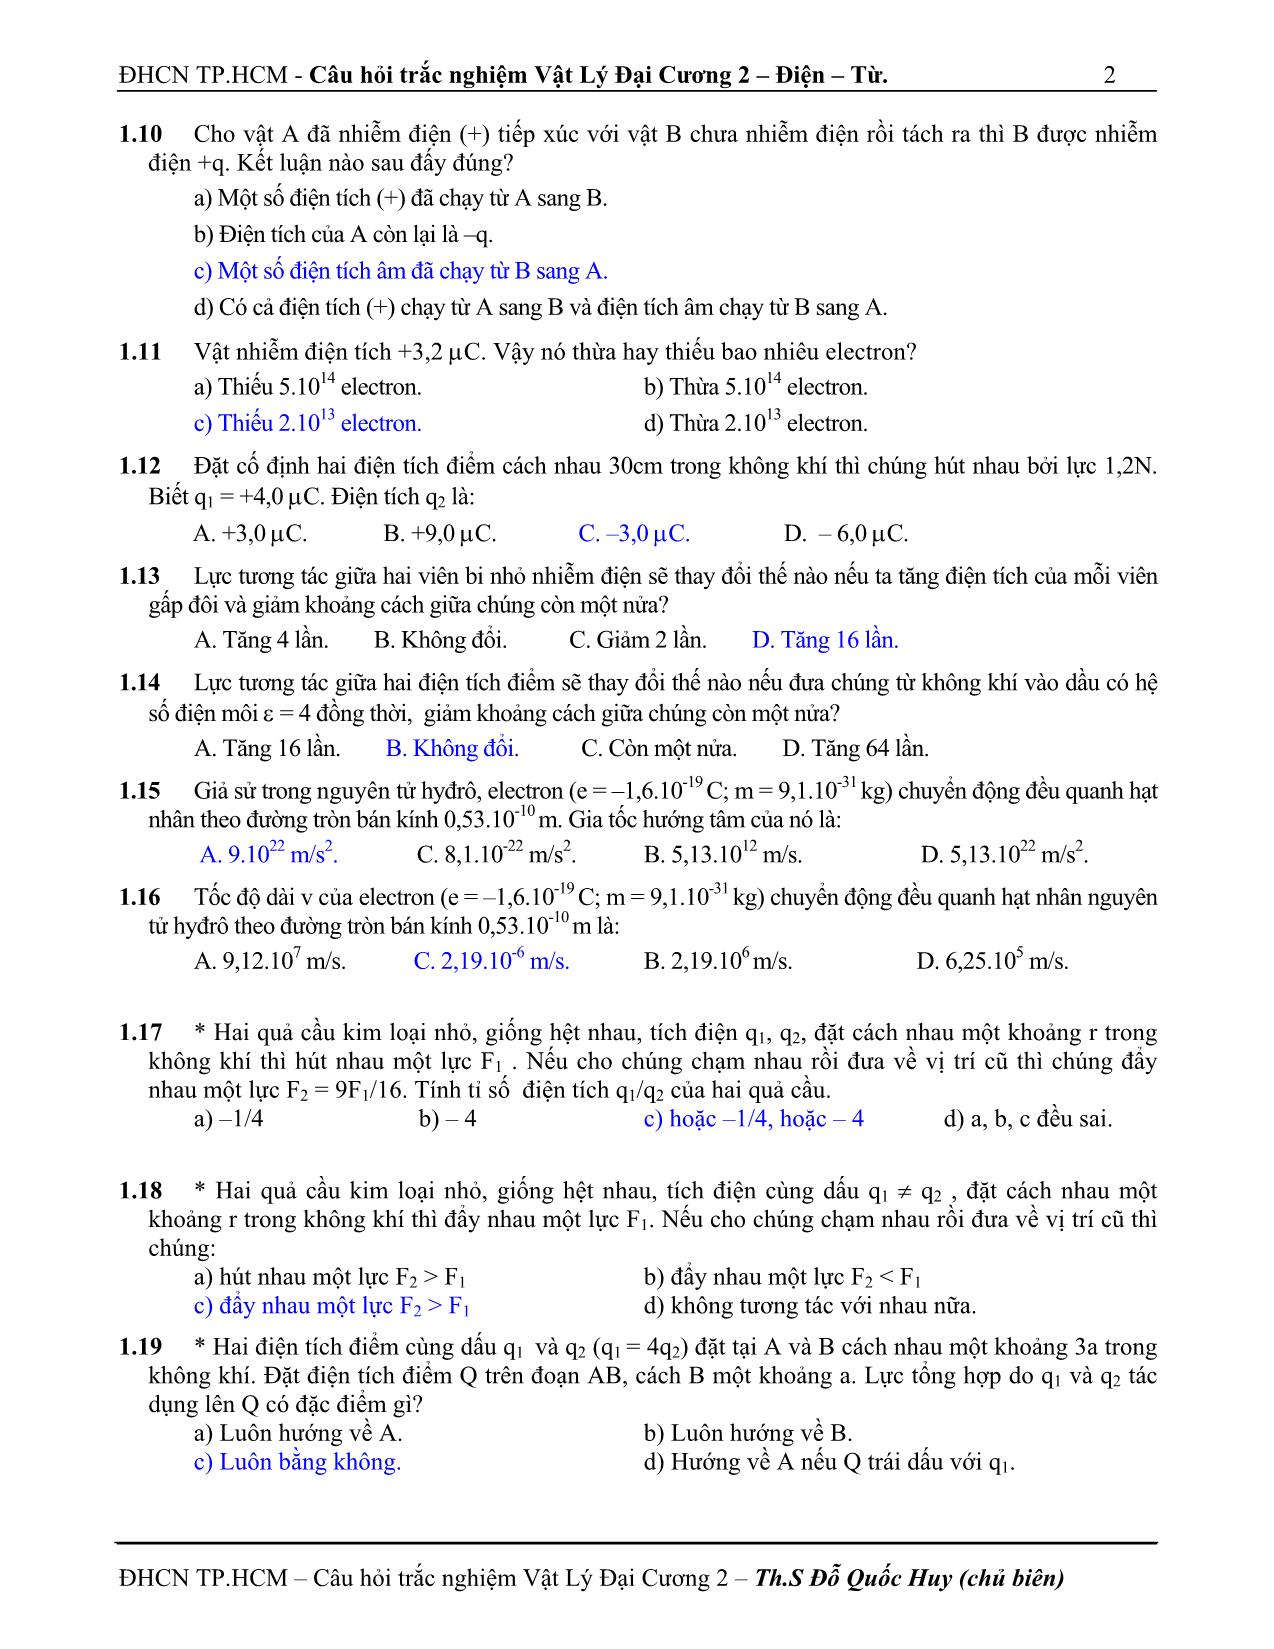 Câu hỏi trắc nghiệm vật lý đại cương 2 trang 2